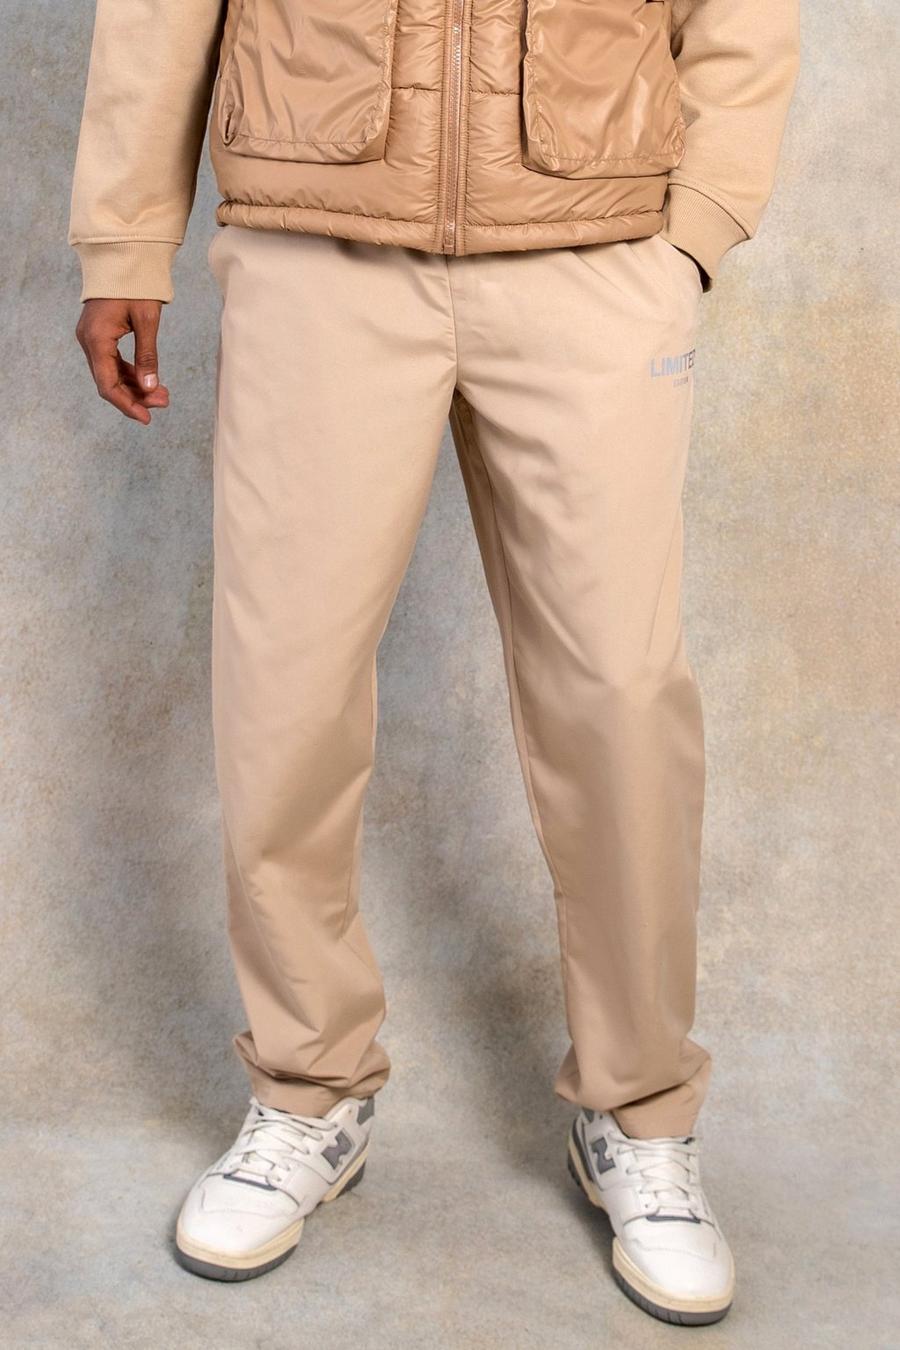 אבן beis מכנסיים בגזרה ישרה מבד עמיד בצבע אפרסק עם כיתוב Limited image number 1